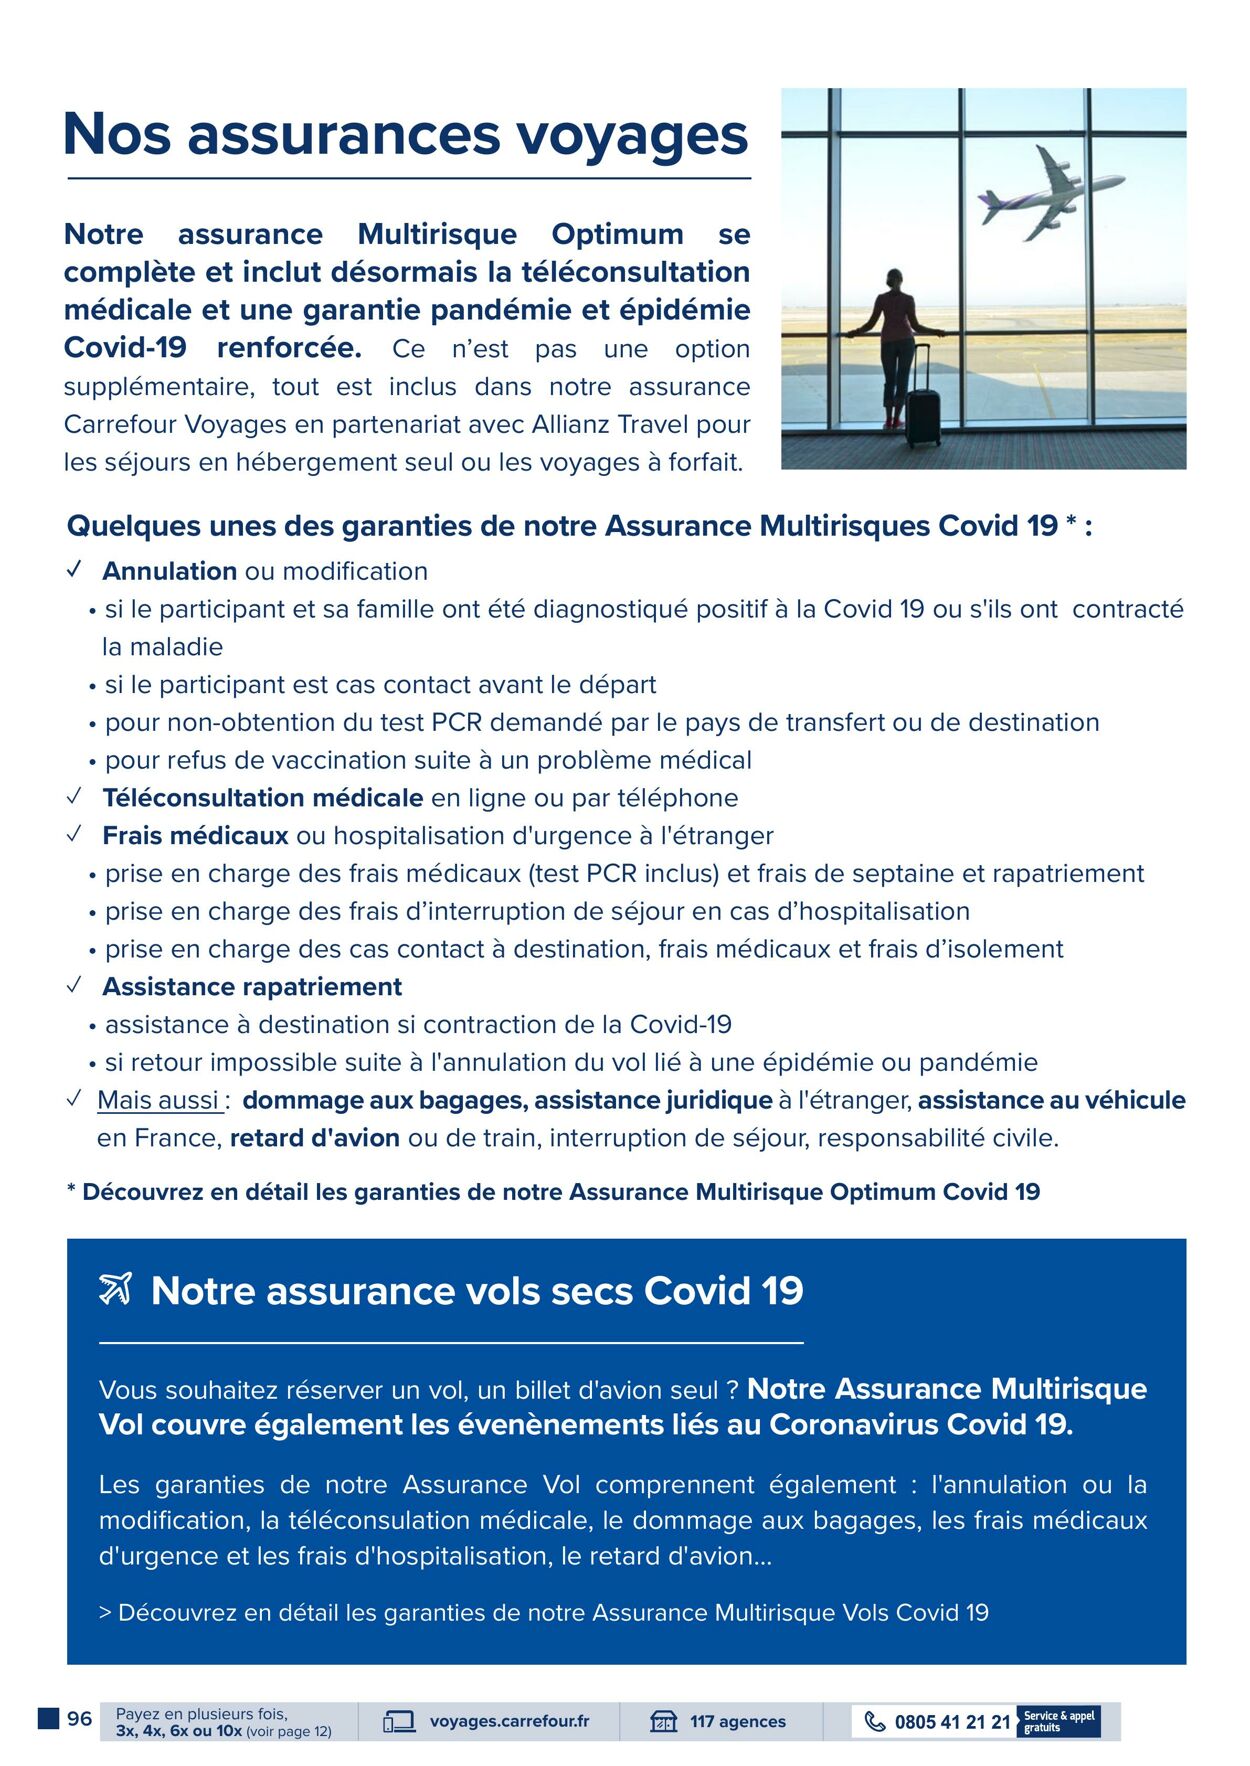 Catalogue Carrefour 28.06.2022 - 09.09.2022